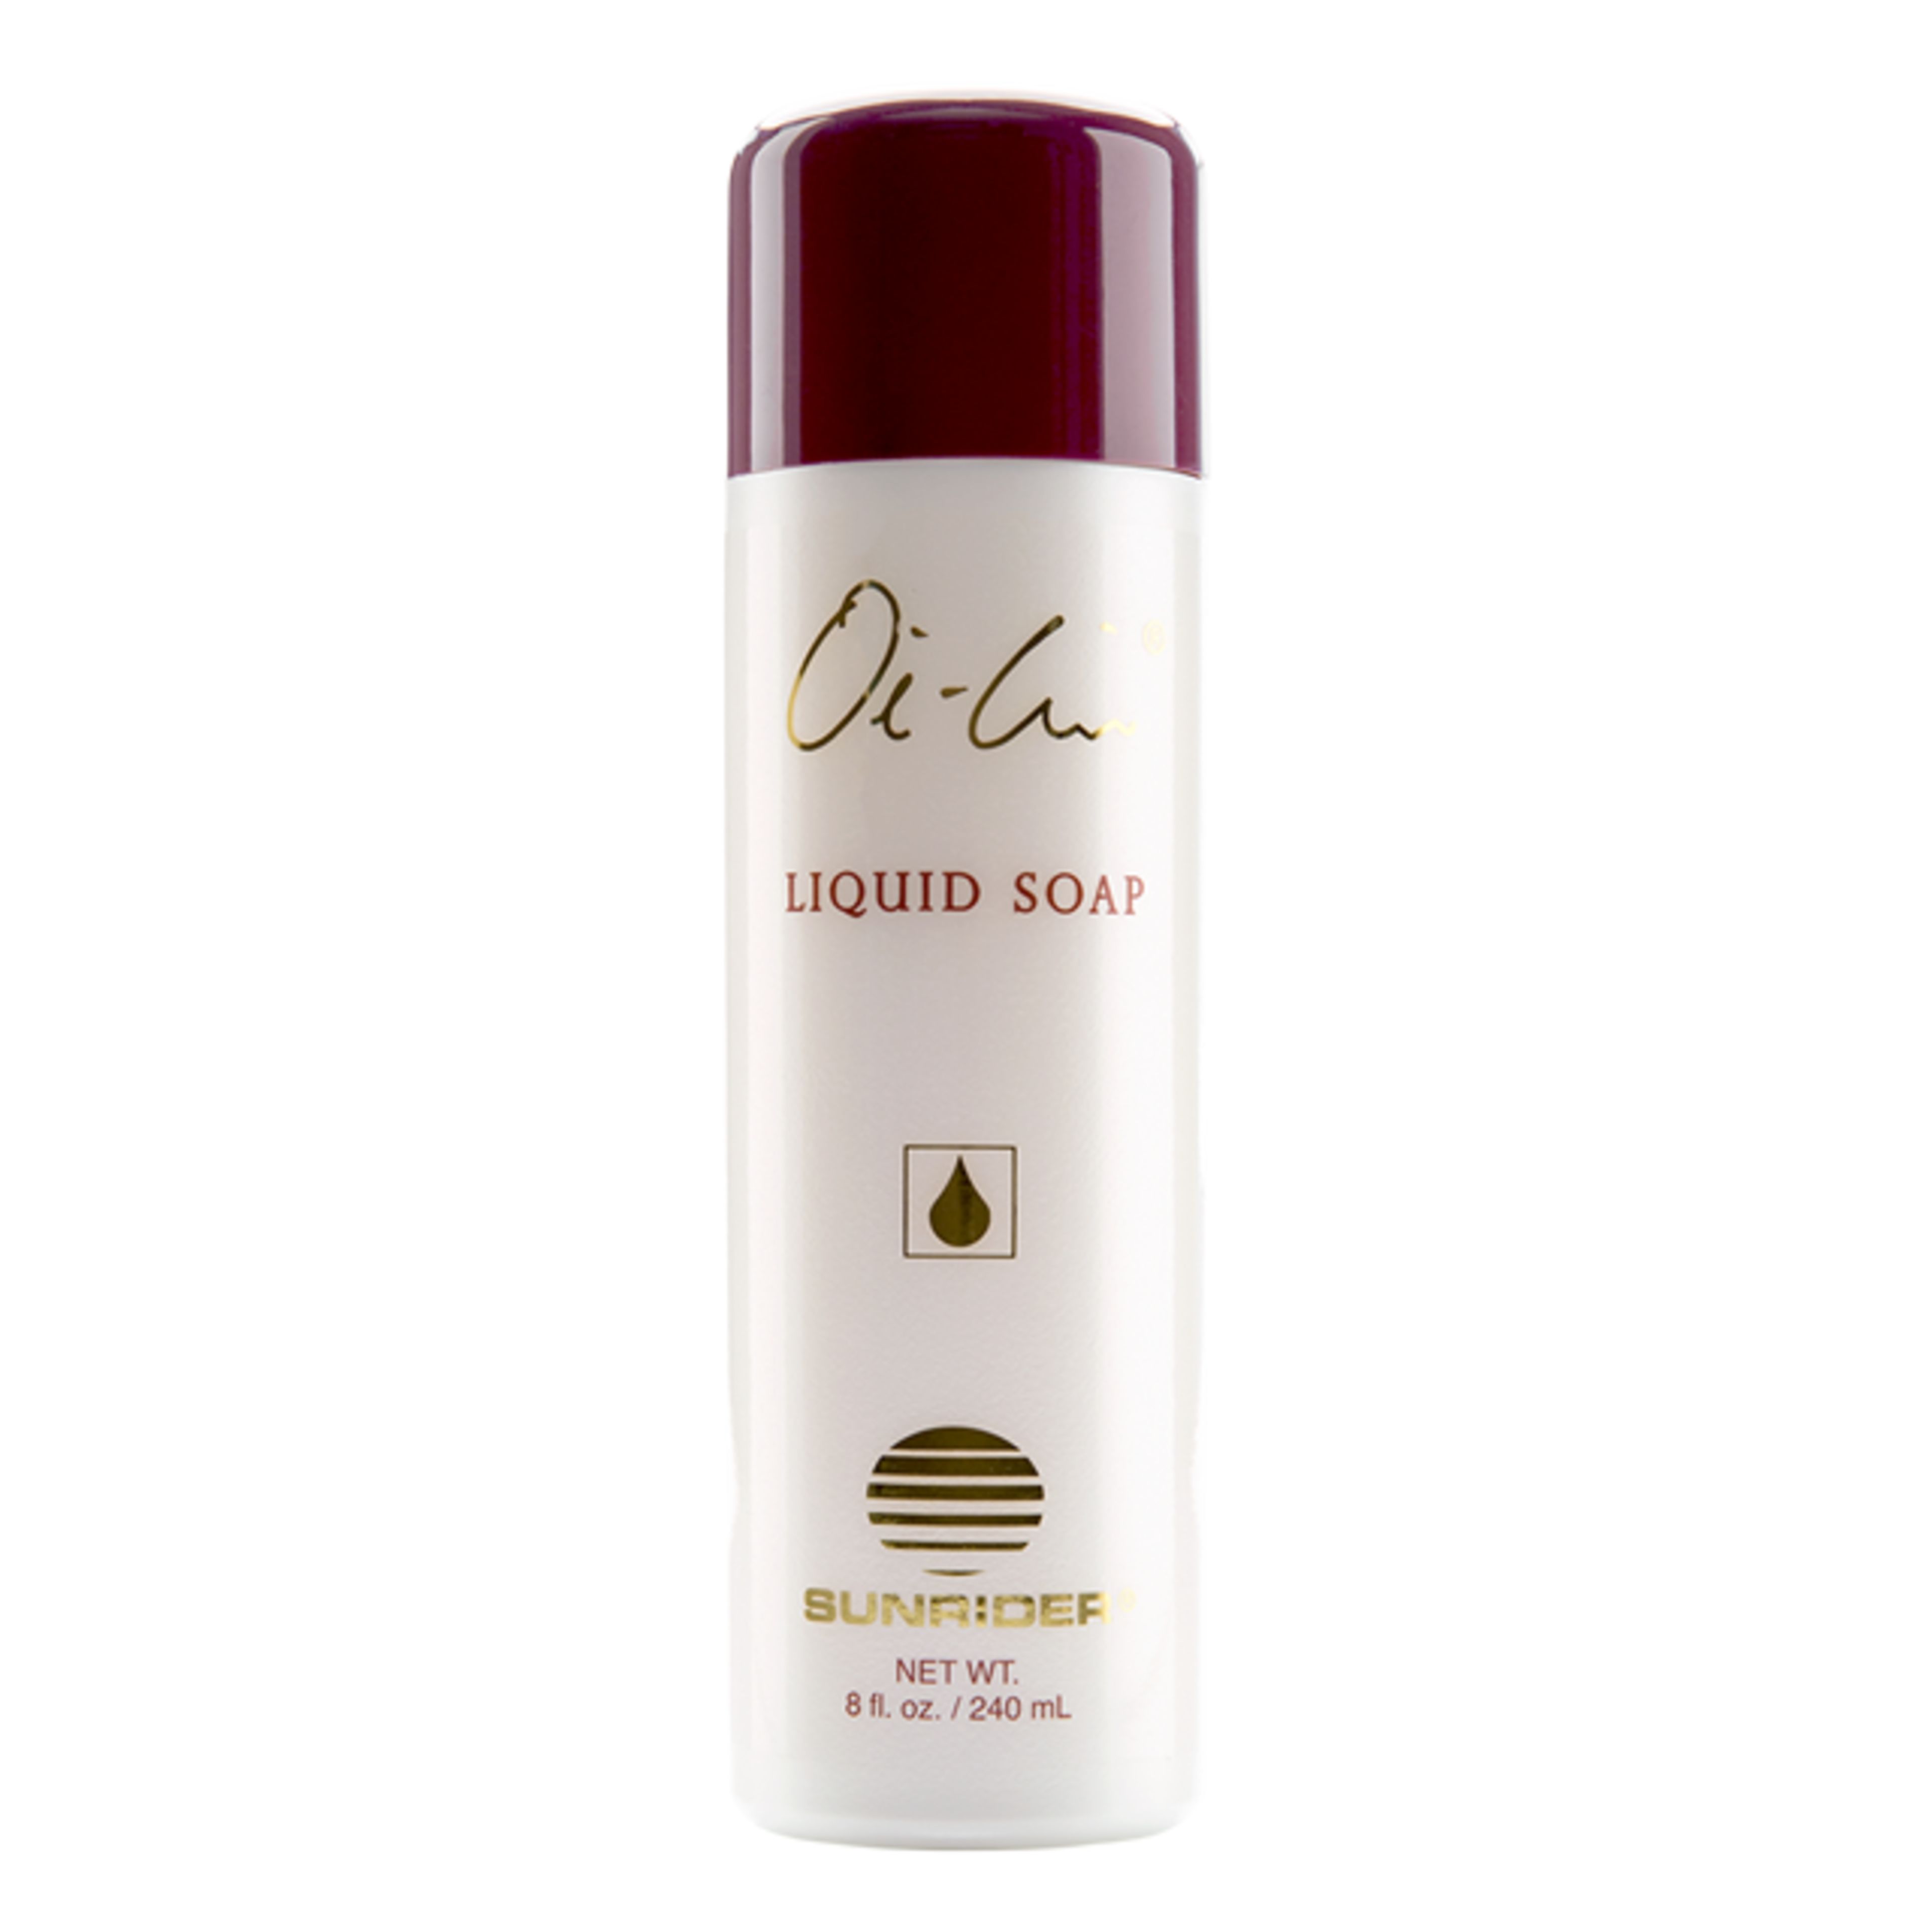 Oi-Lin® Liquid Soap Sulfate & Paraben Free 8oz